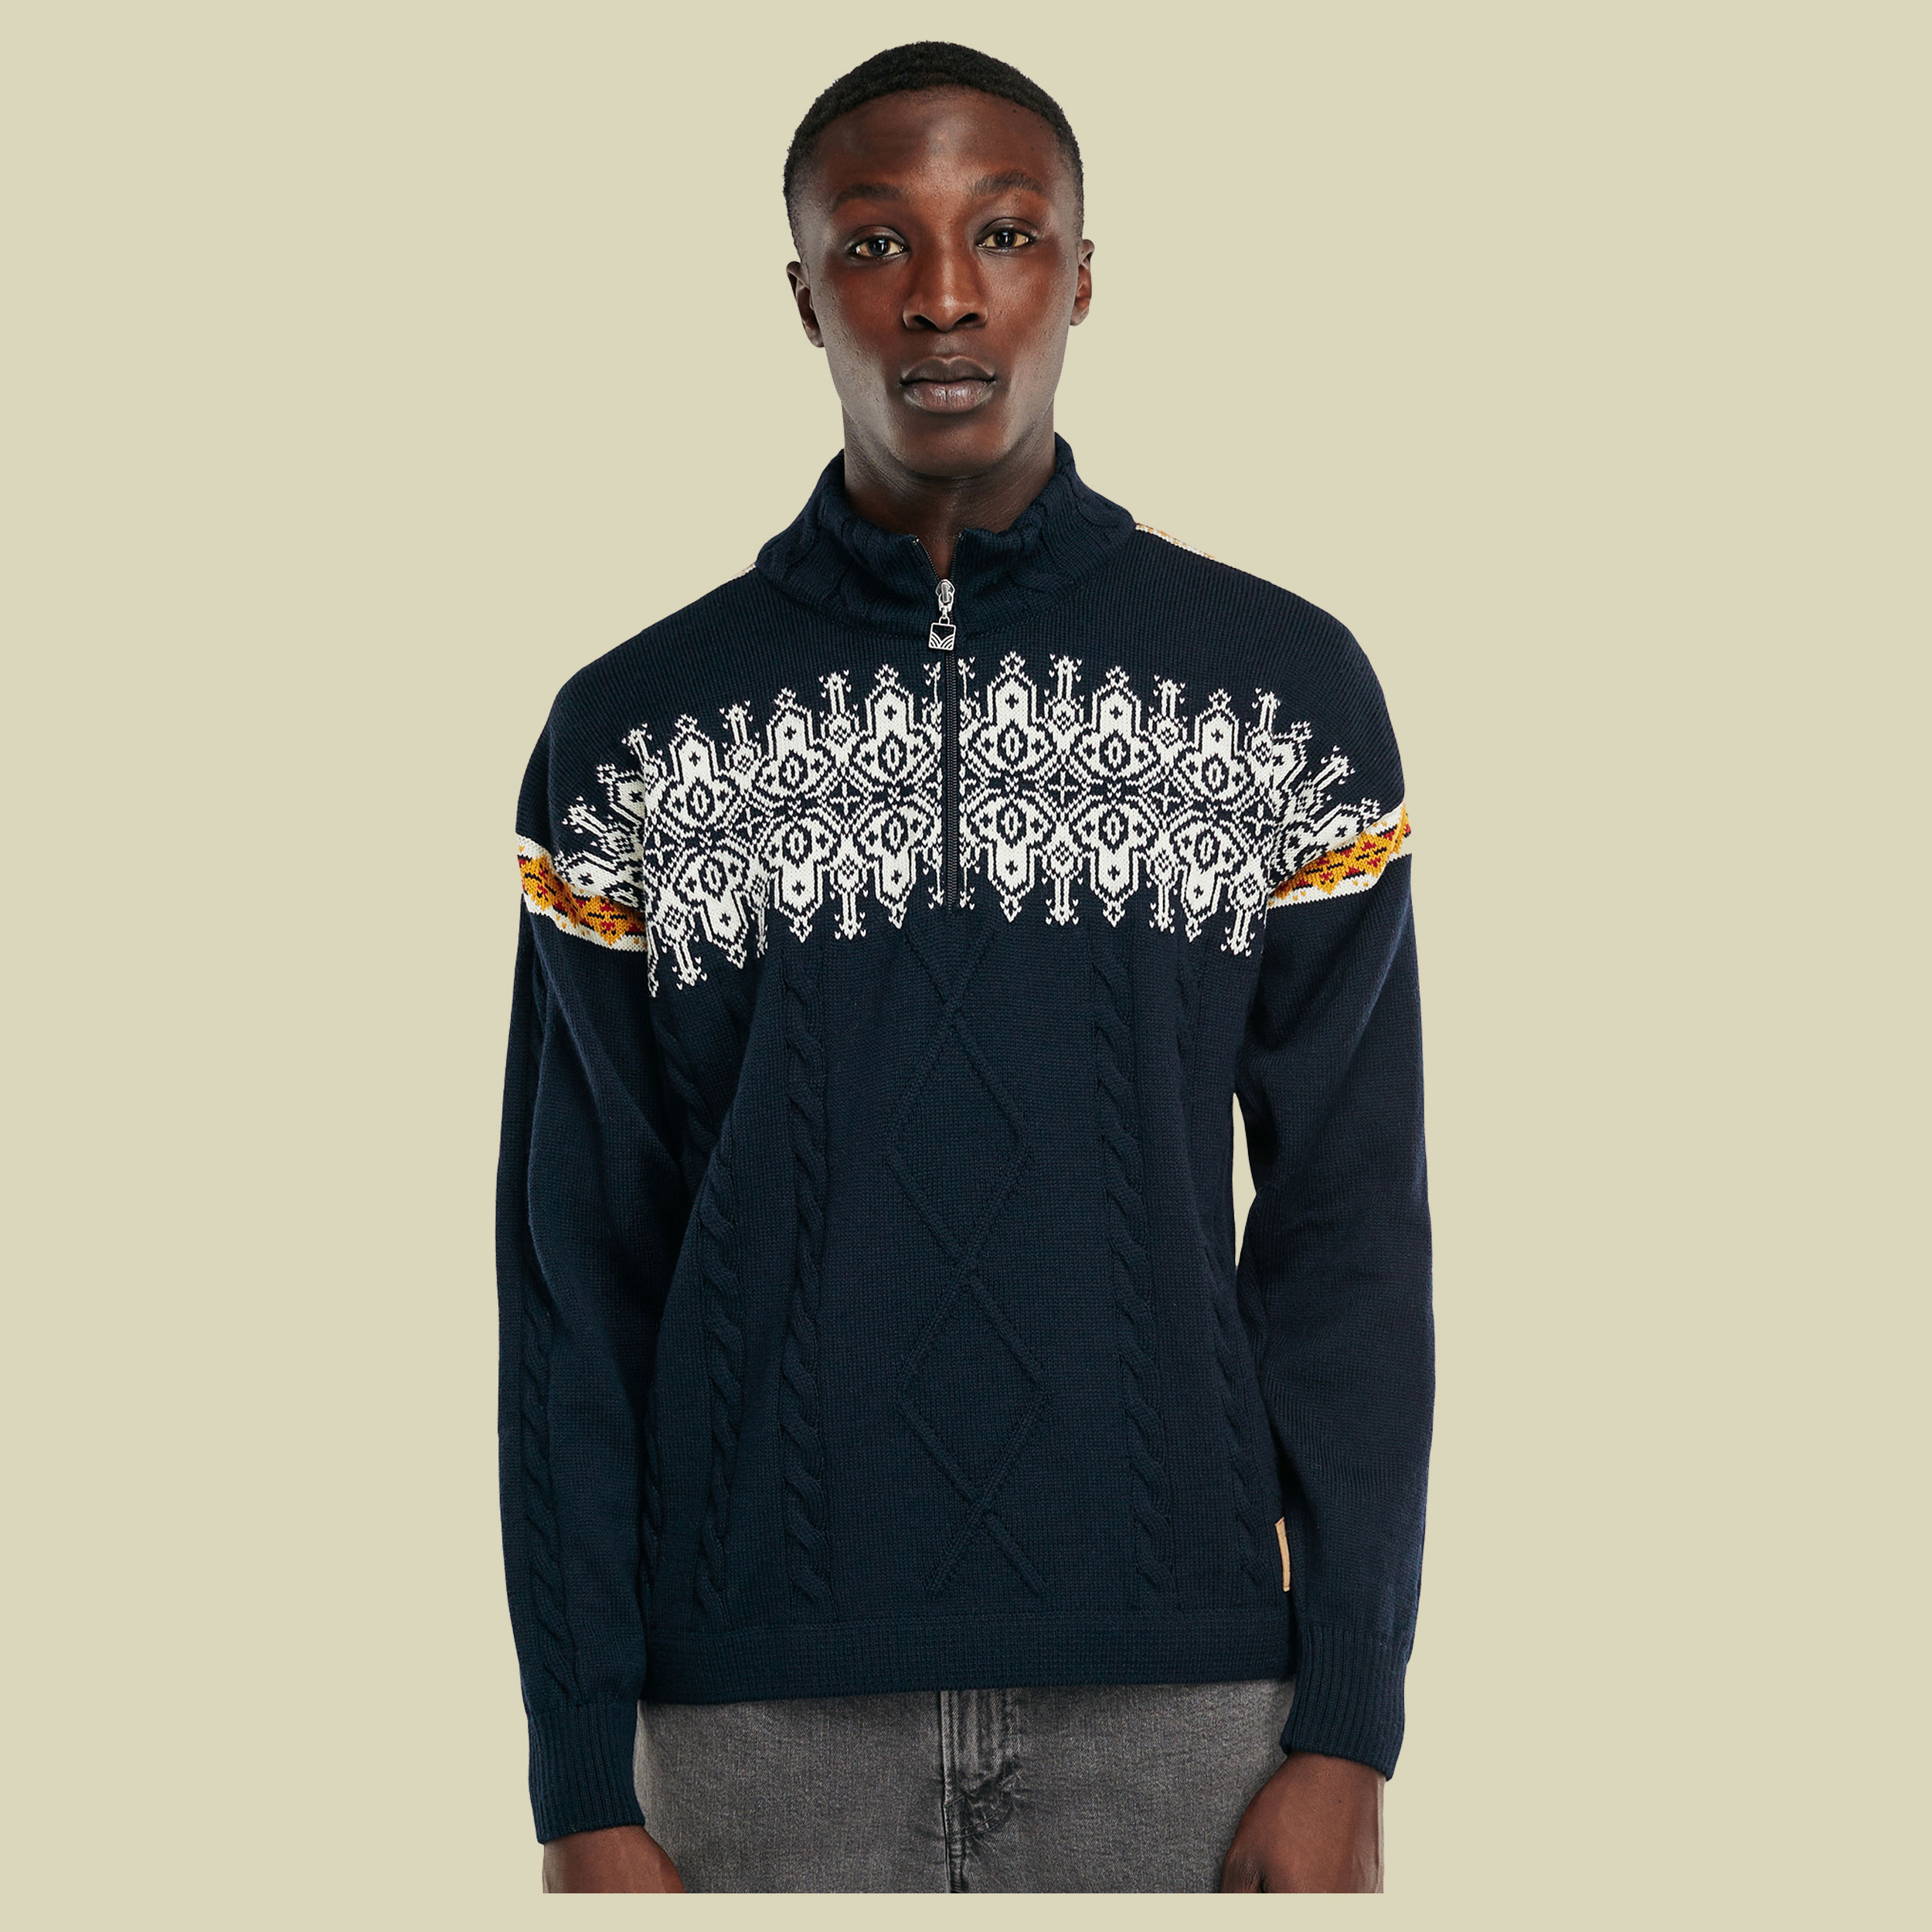 Aspoy Sweater Men Größe M  Farbe navy/off white/mustard/raspberry